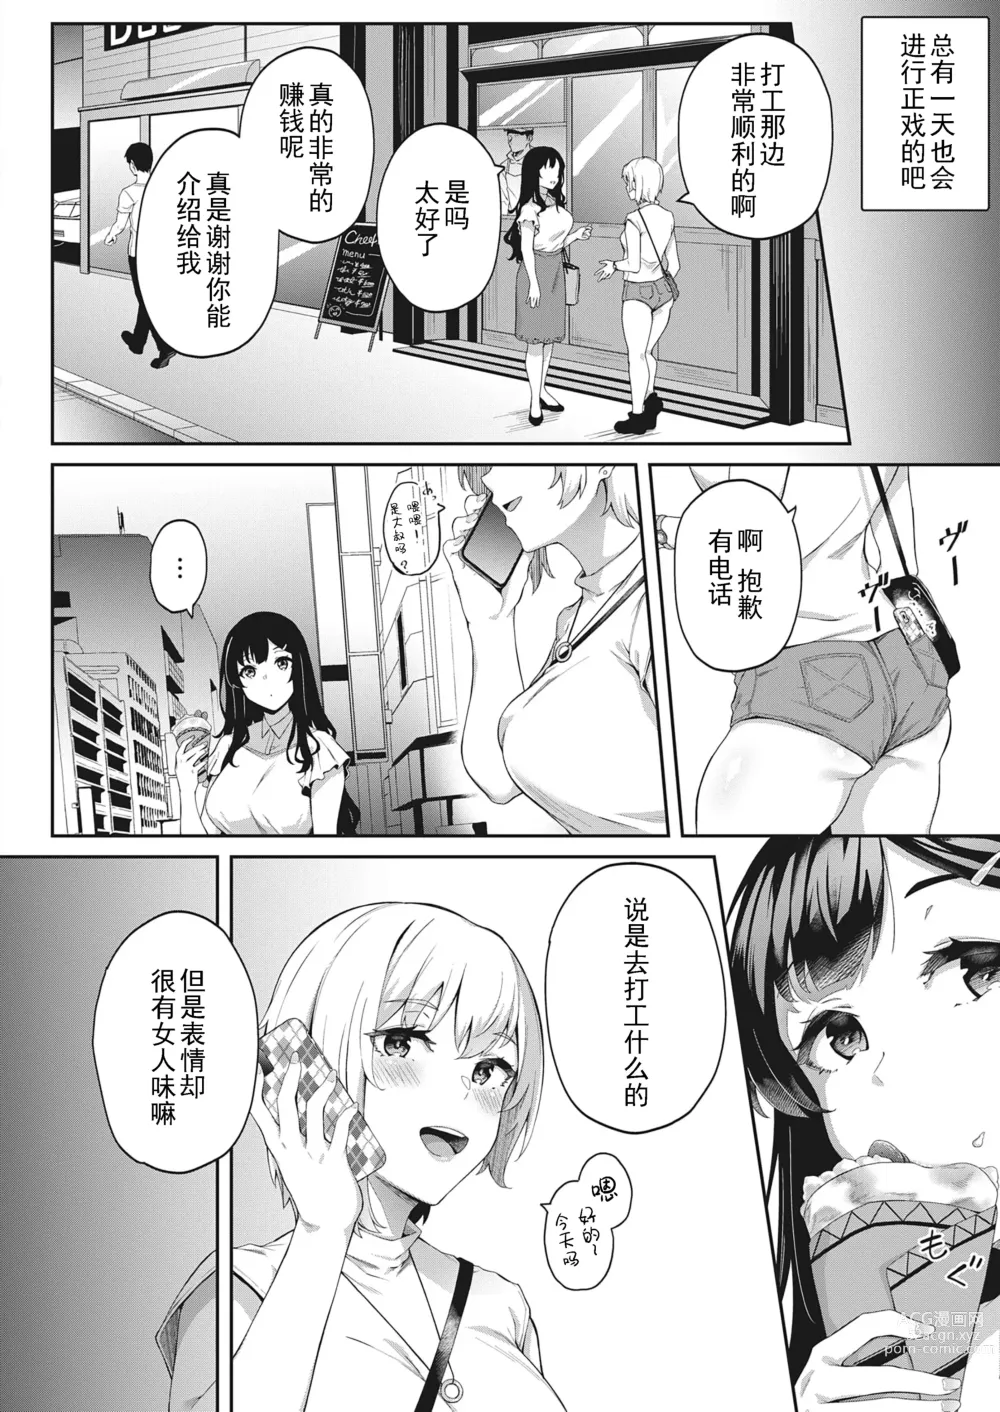 Page 12 of manga Kimi wa Ikasama o Shite iru